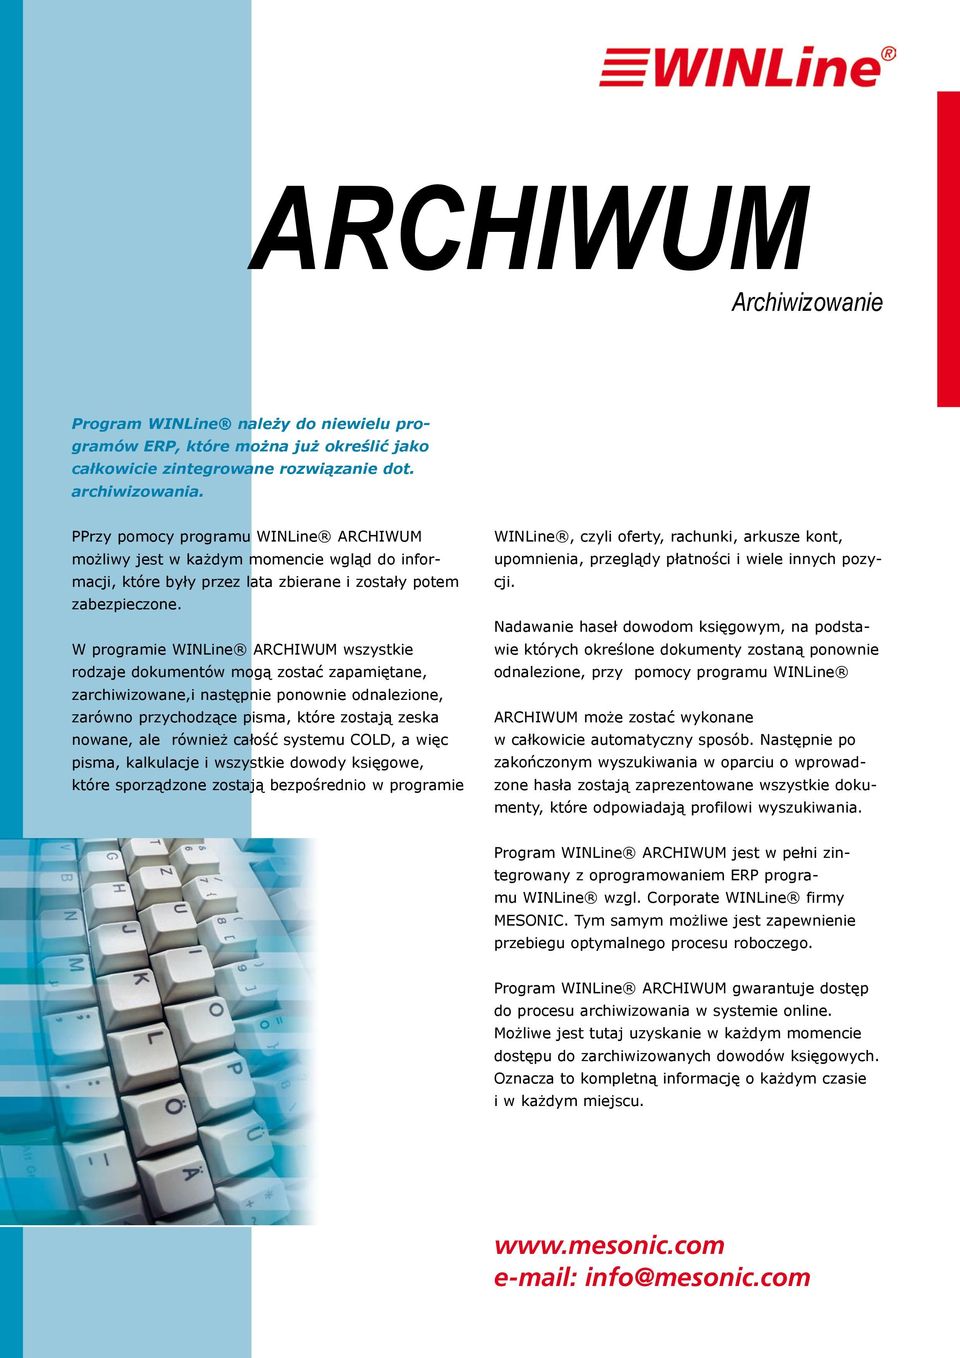 W programie WINLine ARCHIWUM wszystkie rodzaje dokumentów mogą zostać zapamiętane, zarchiwizowane,i następnie ponownie odnalezione, zarówno przychodzące pisma, które zostają zeska nowane, ale również